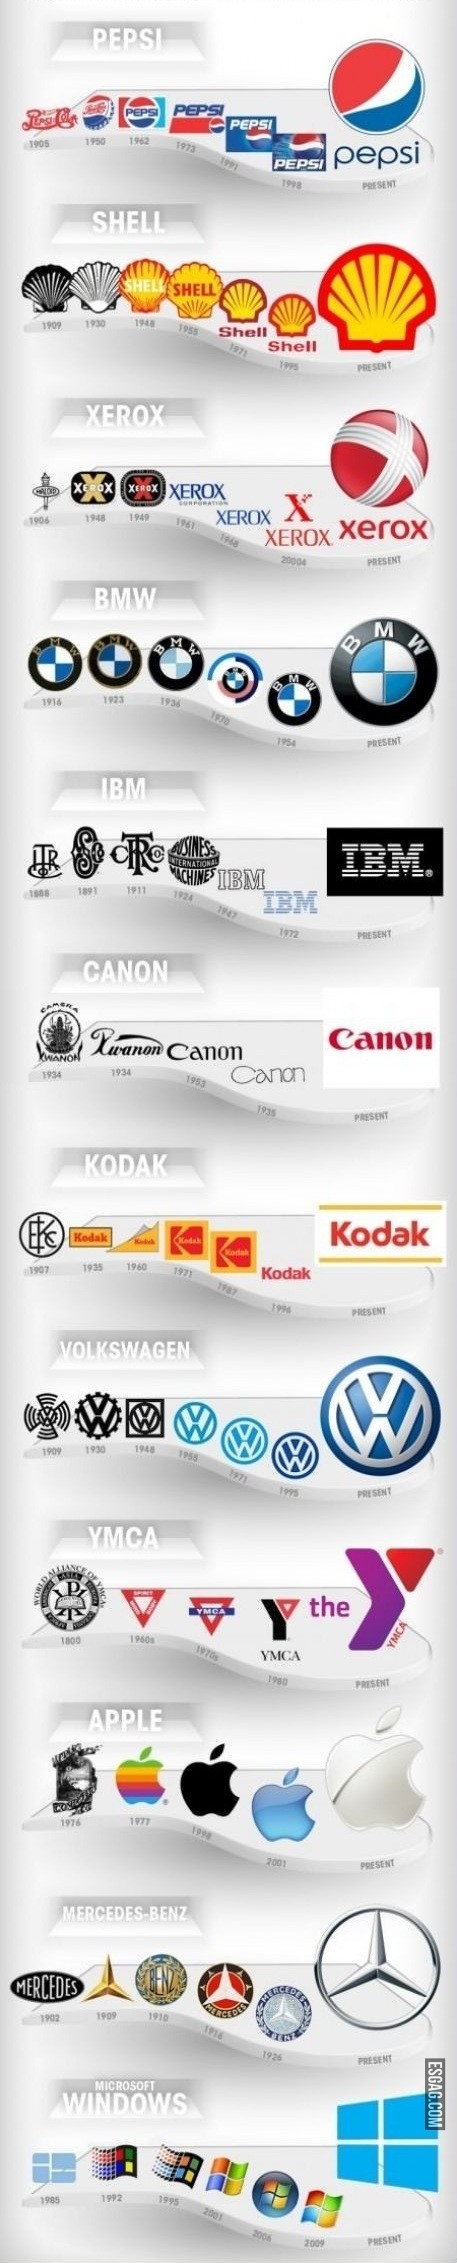 Evolucion de logos